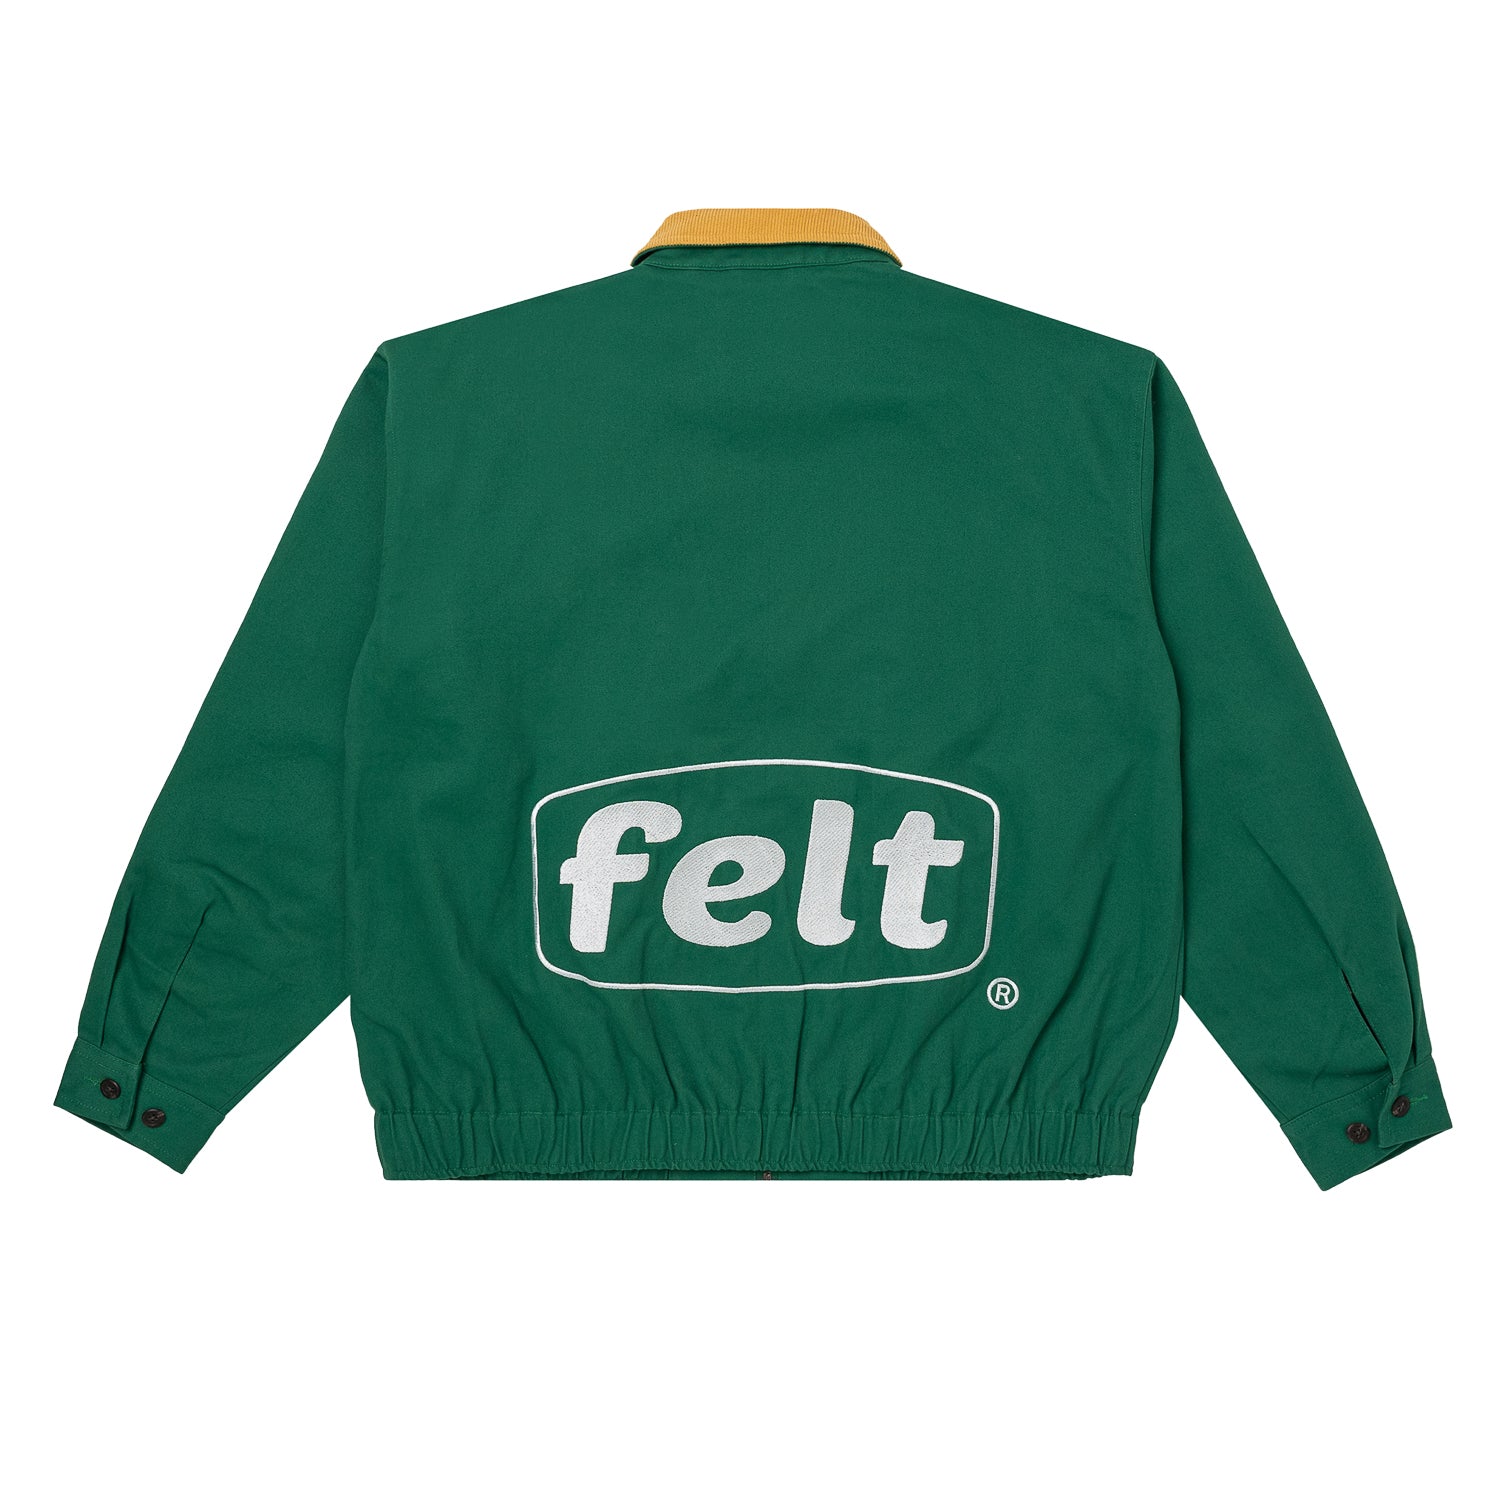 FELT Workwear Jacket 'Green'